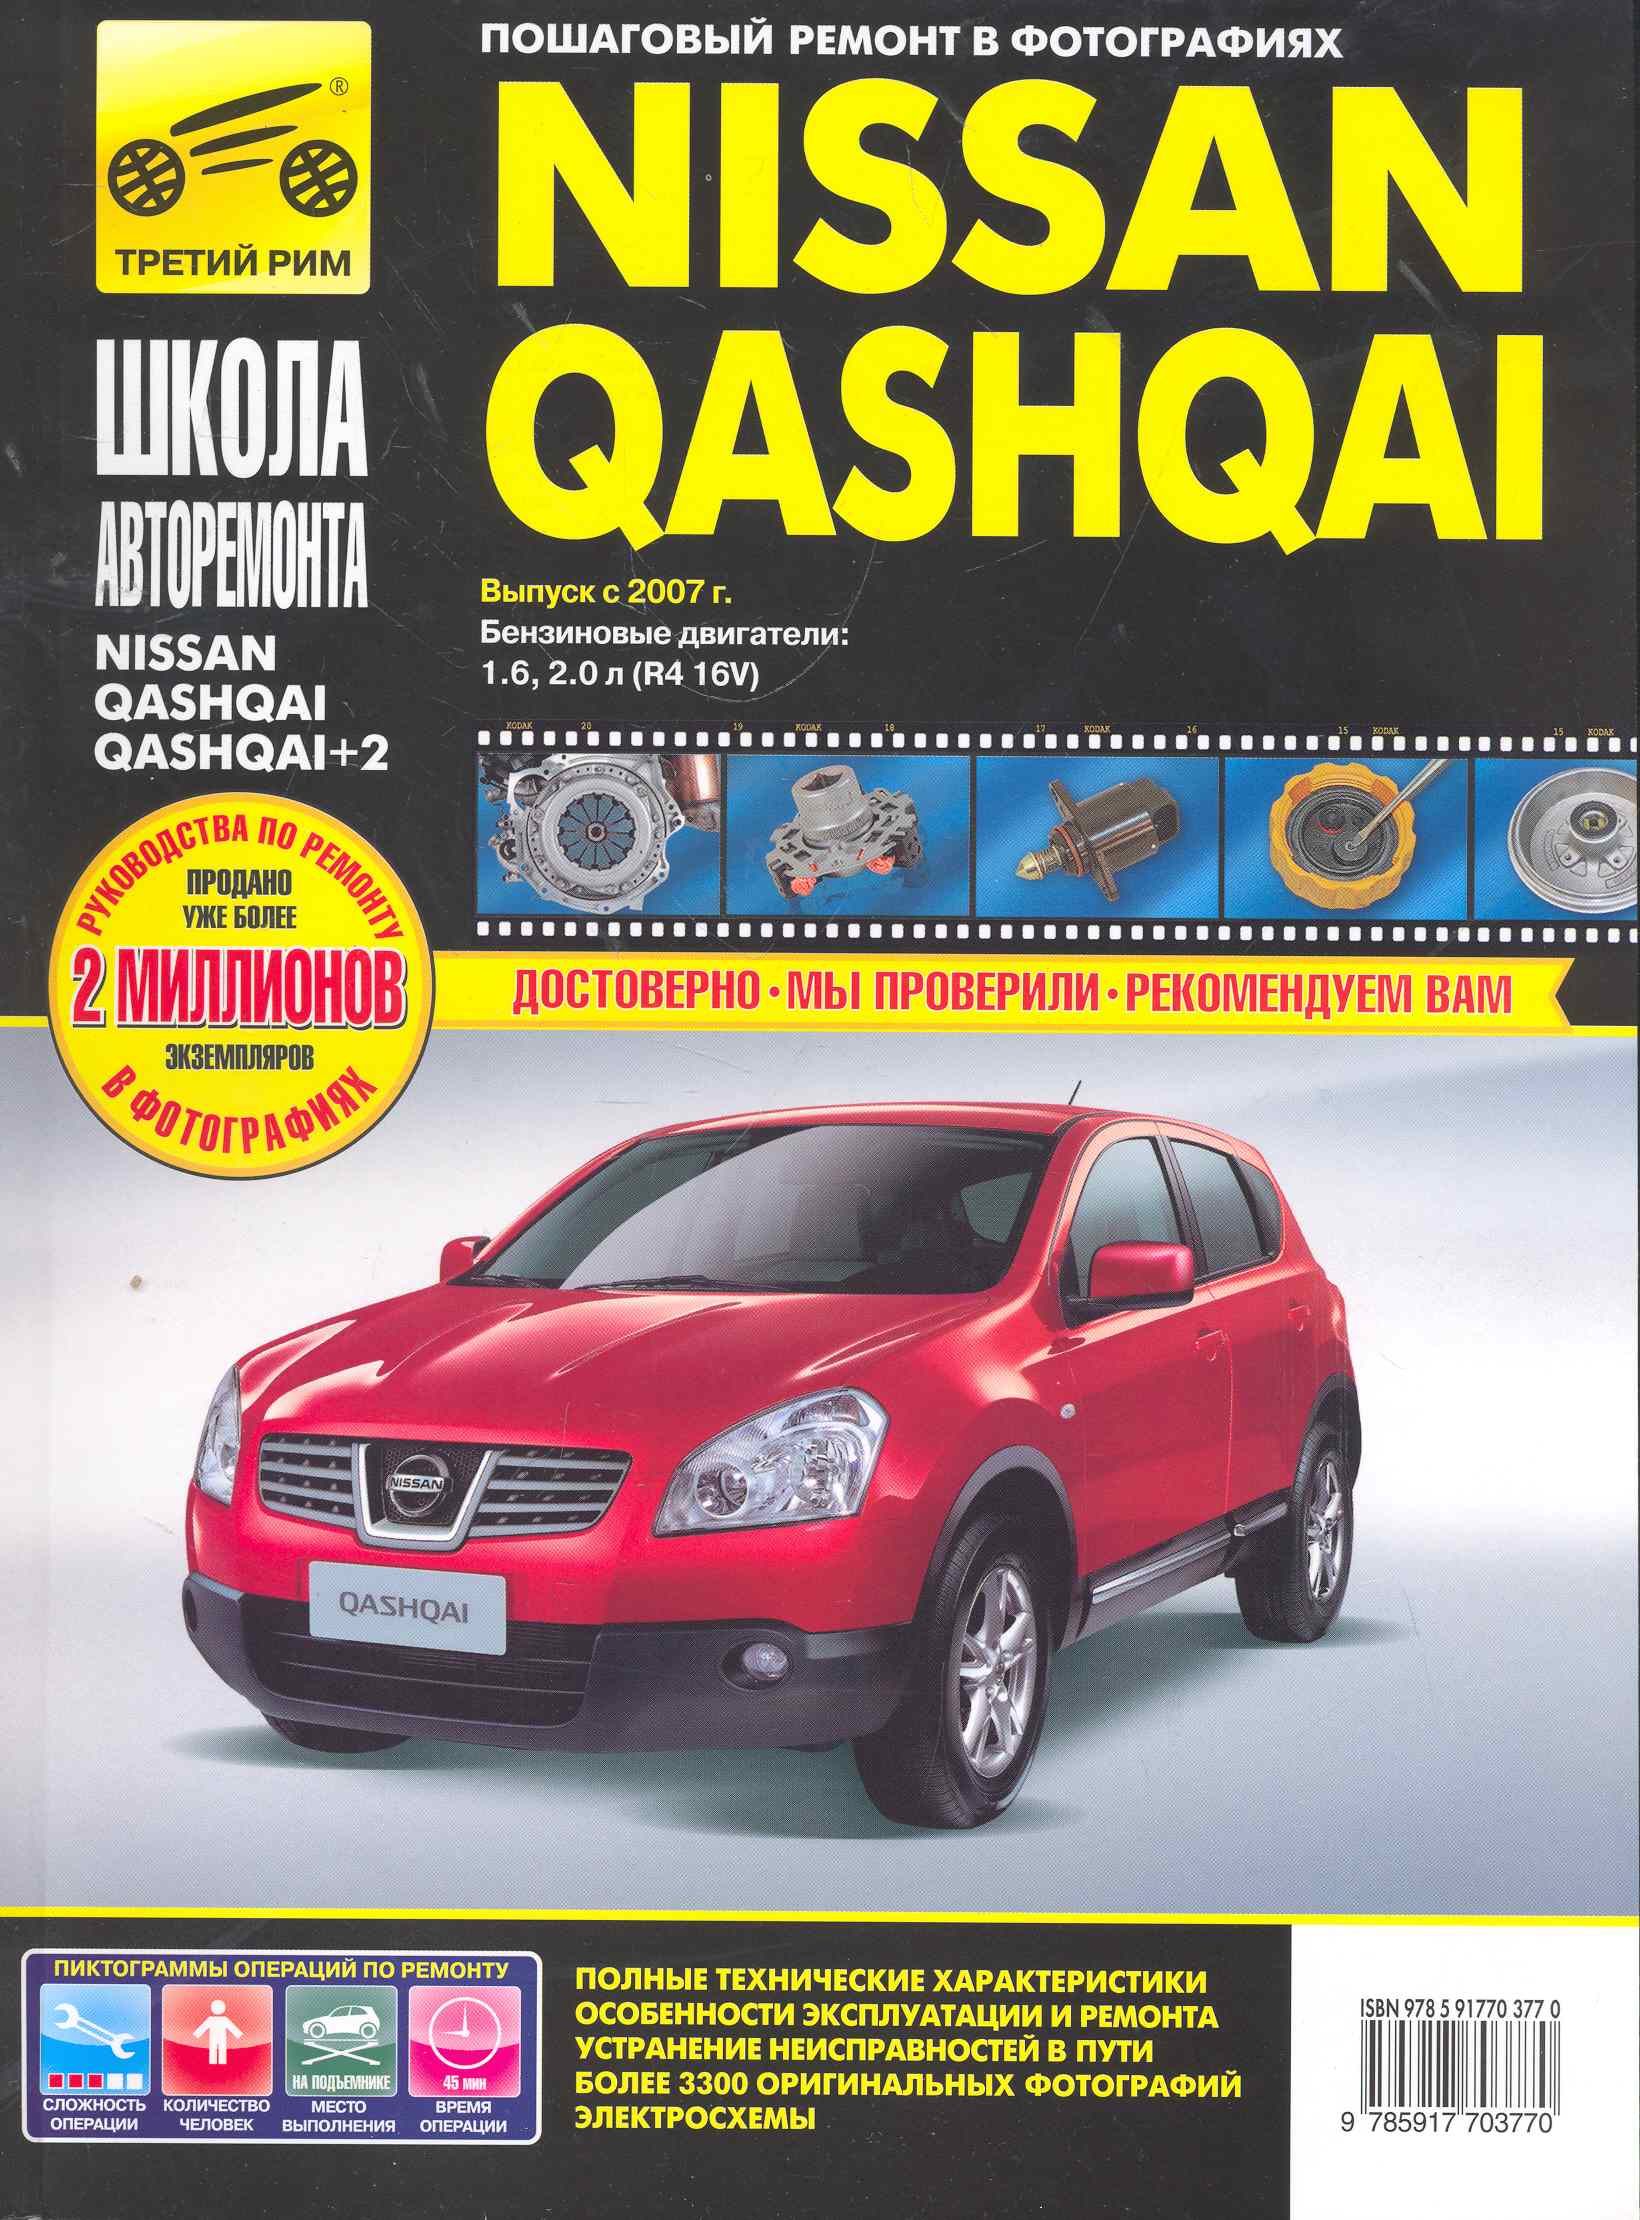 Nissan Qashqai/ + 2 с 2007 г. бенз. дв. 1.6 2.0 ч/б фото рук. по рем.//с 2007 г.//